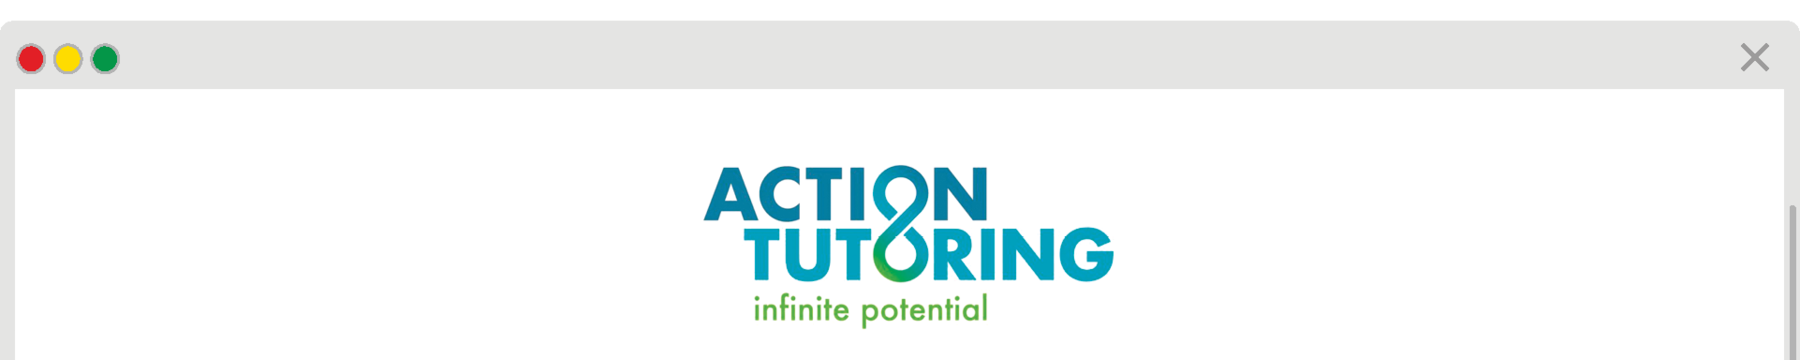 Reprodução de página da internet.  
Action Tutoring. infinite potential.